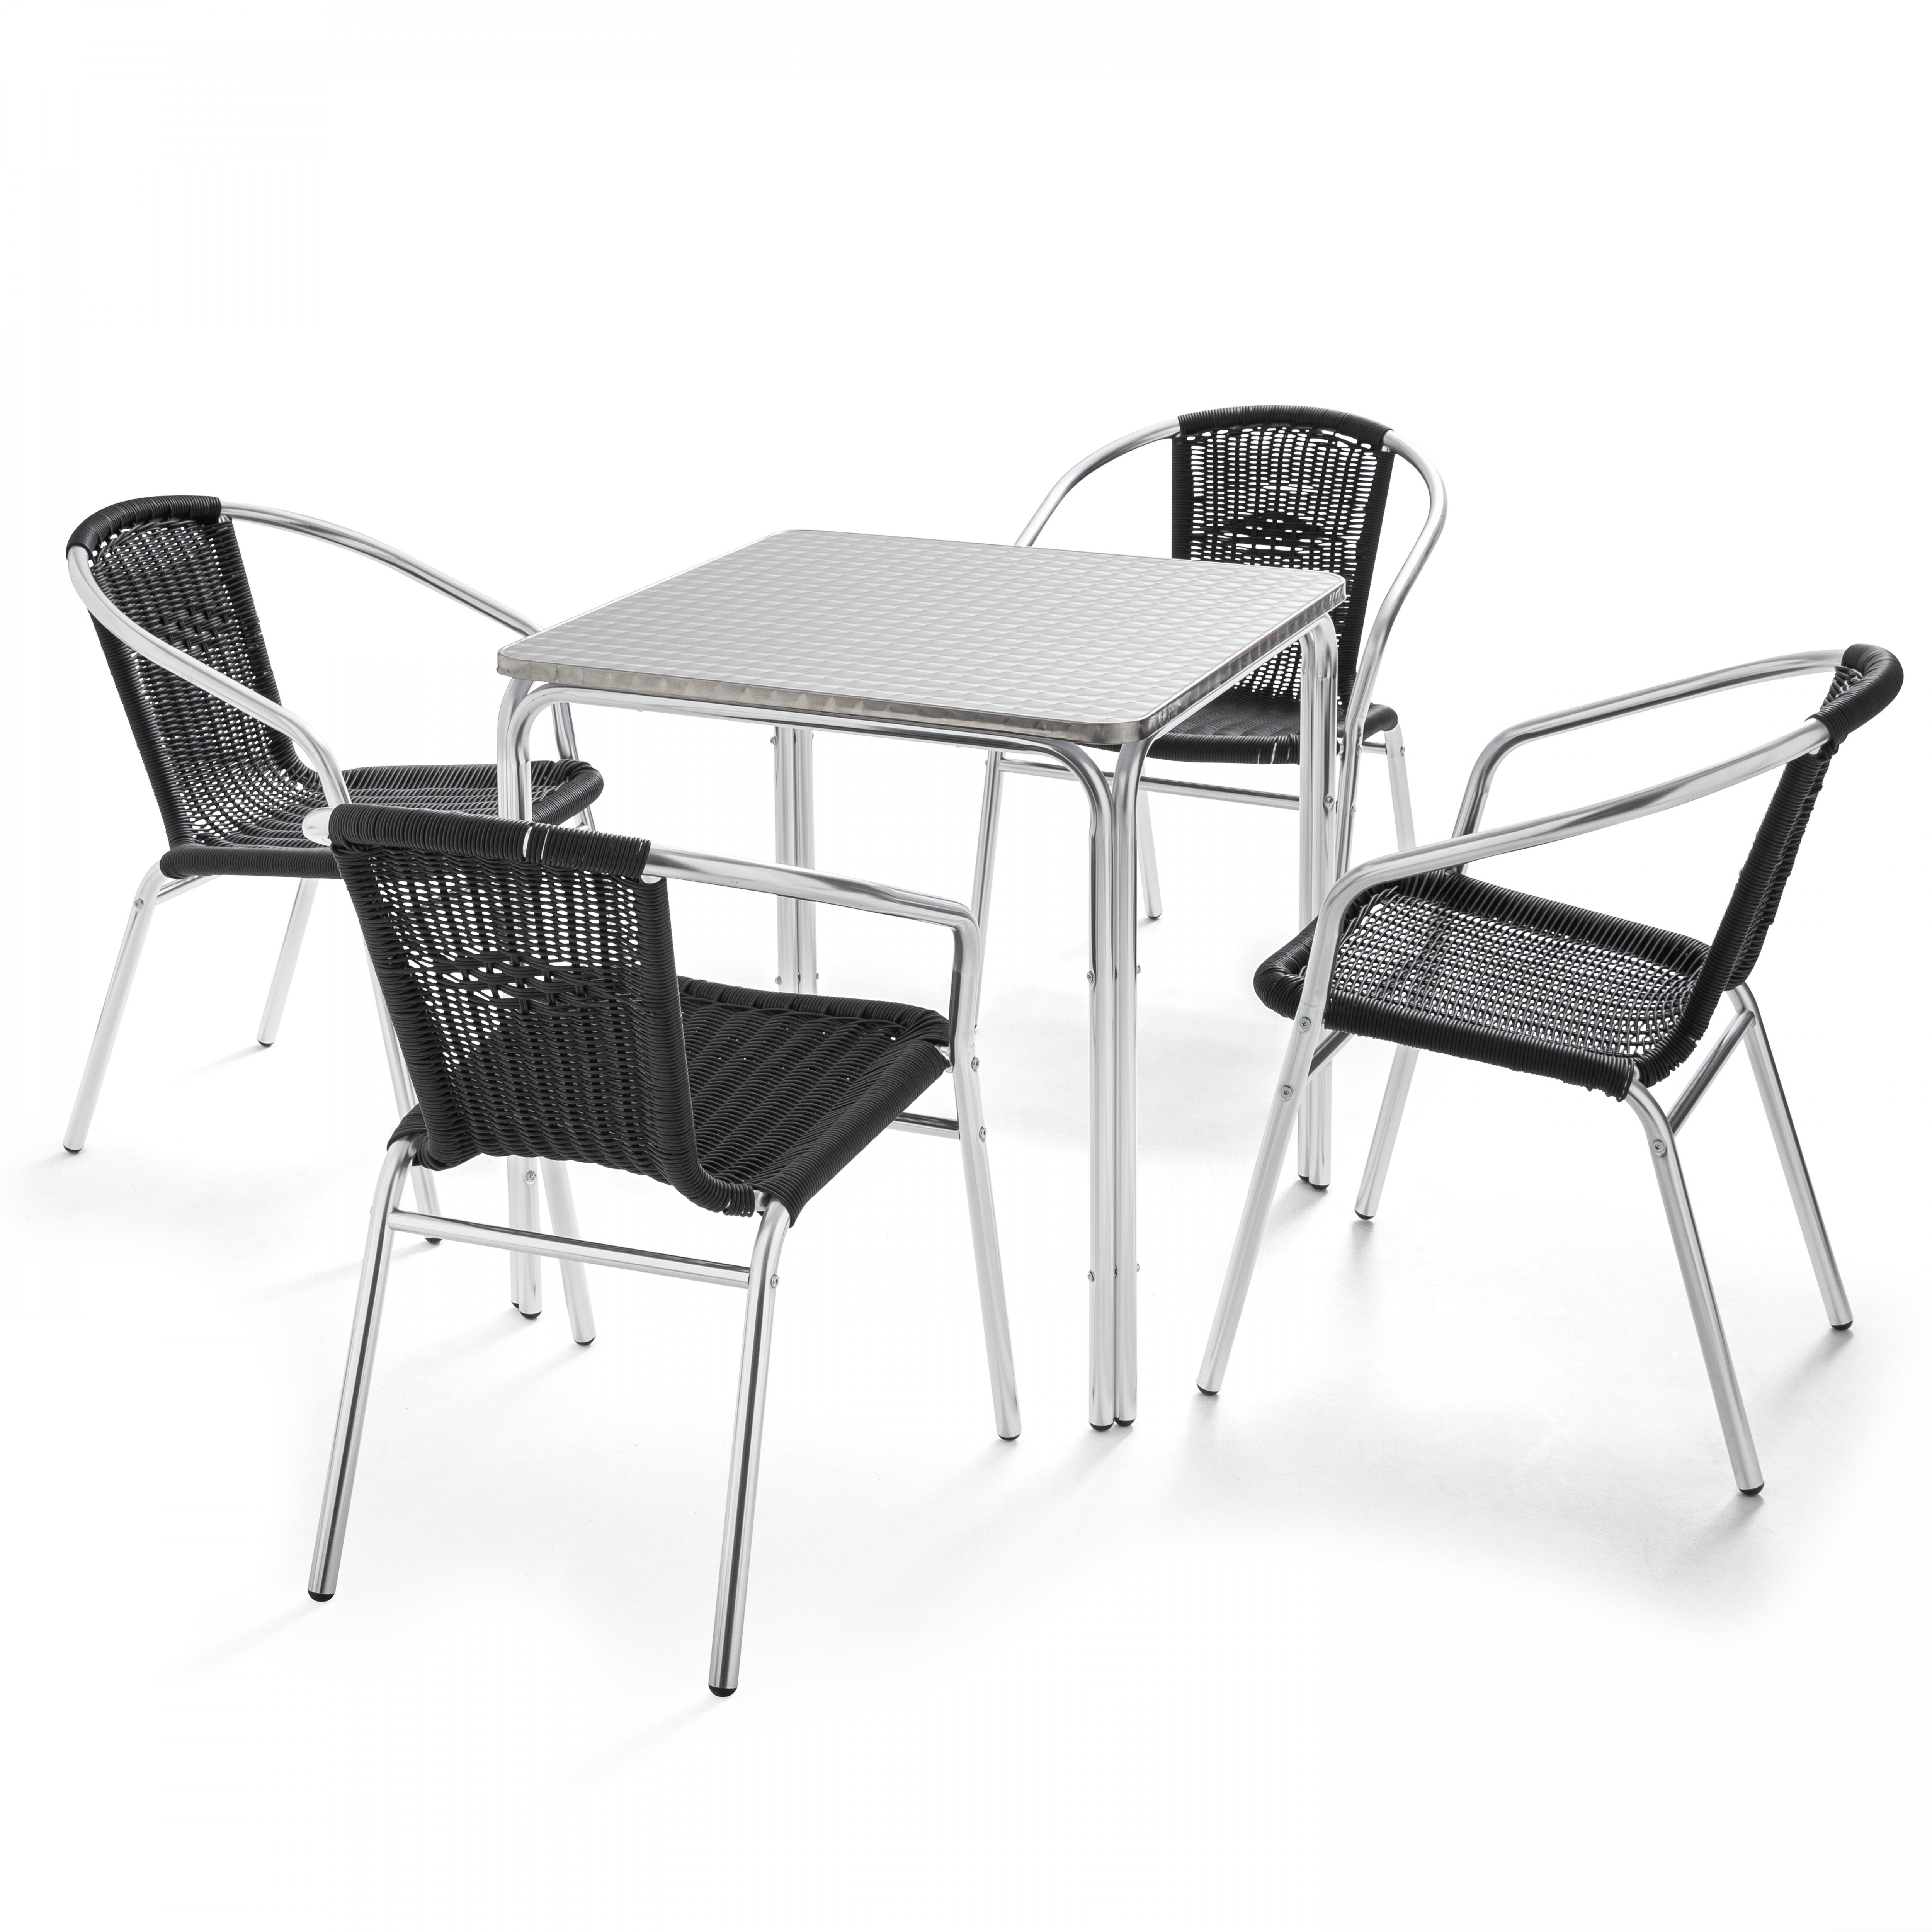 Table de jardin carrée 70 x 70 cm et 4 chaises avec accoudoirs en résine tressé empilables